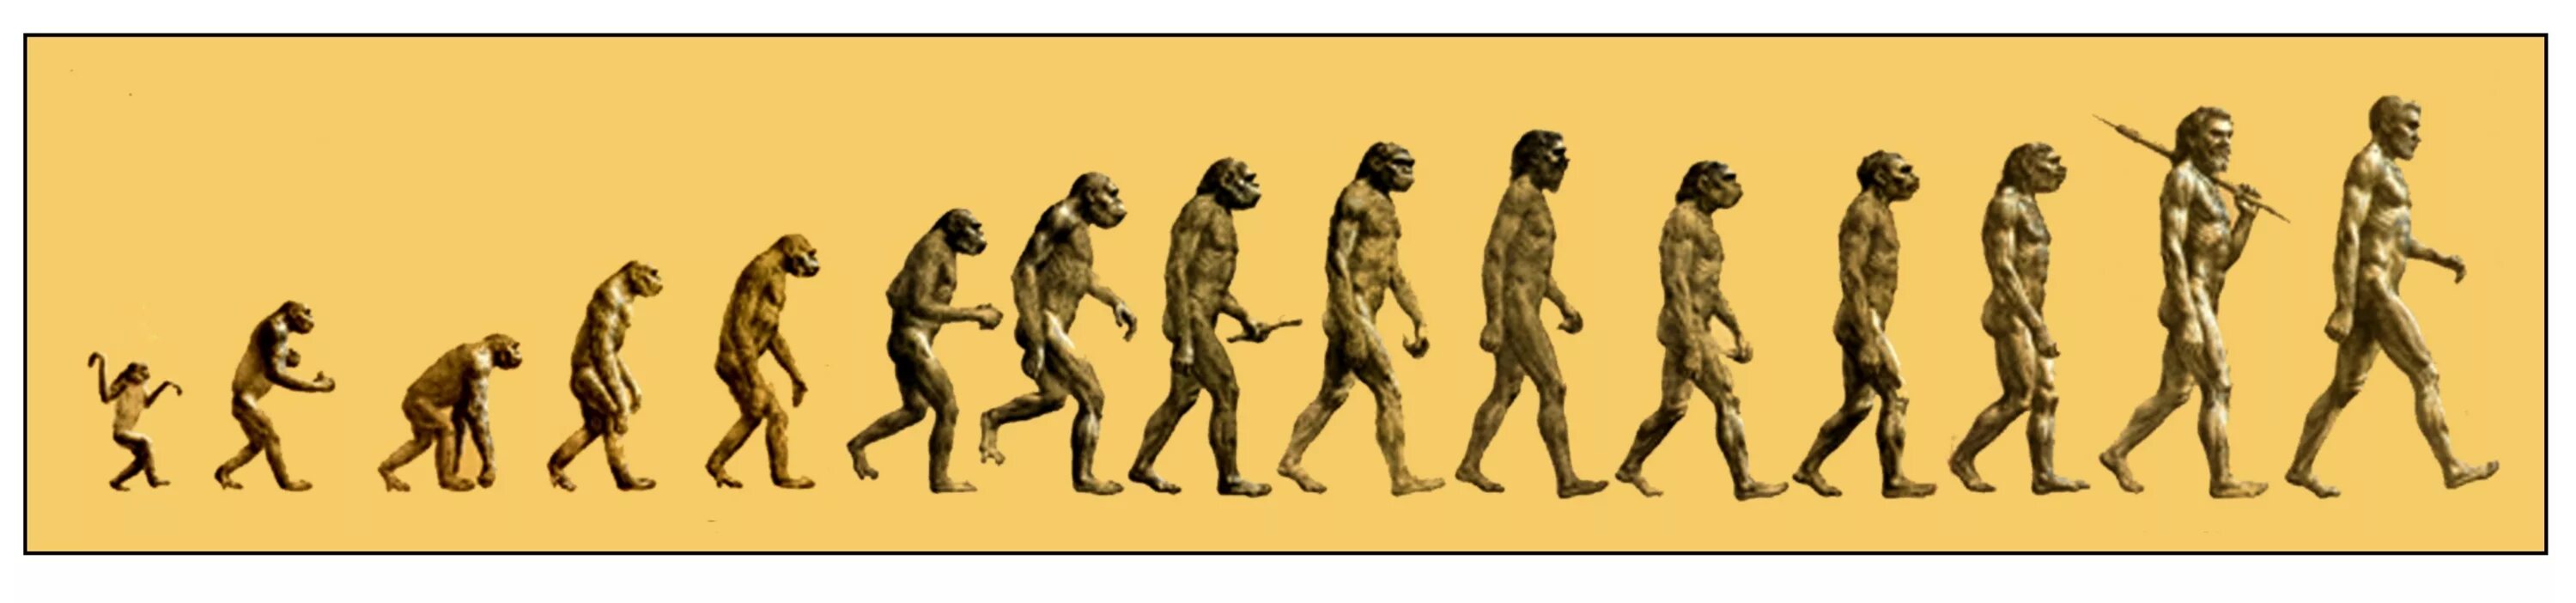 Появление двух и более новых форм. Австралопитек неандерталец хомо сапиенс. Этапы эволюции человека,хомо сапиенс. Австралопитек Эволюция. Этапы эволюции хомо сапиенс.